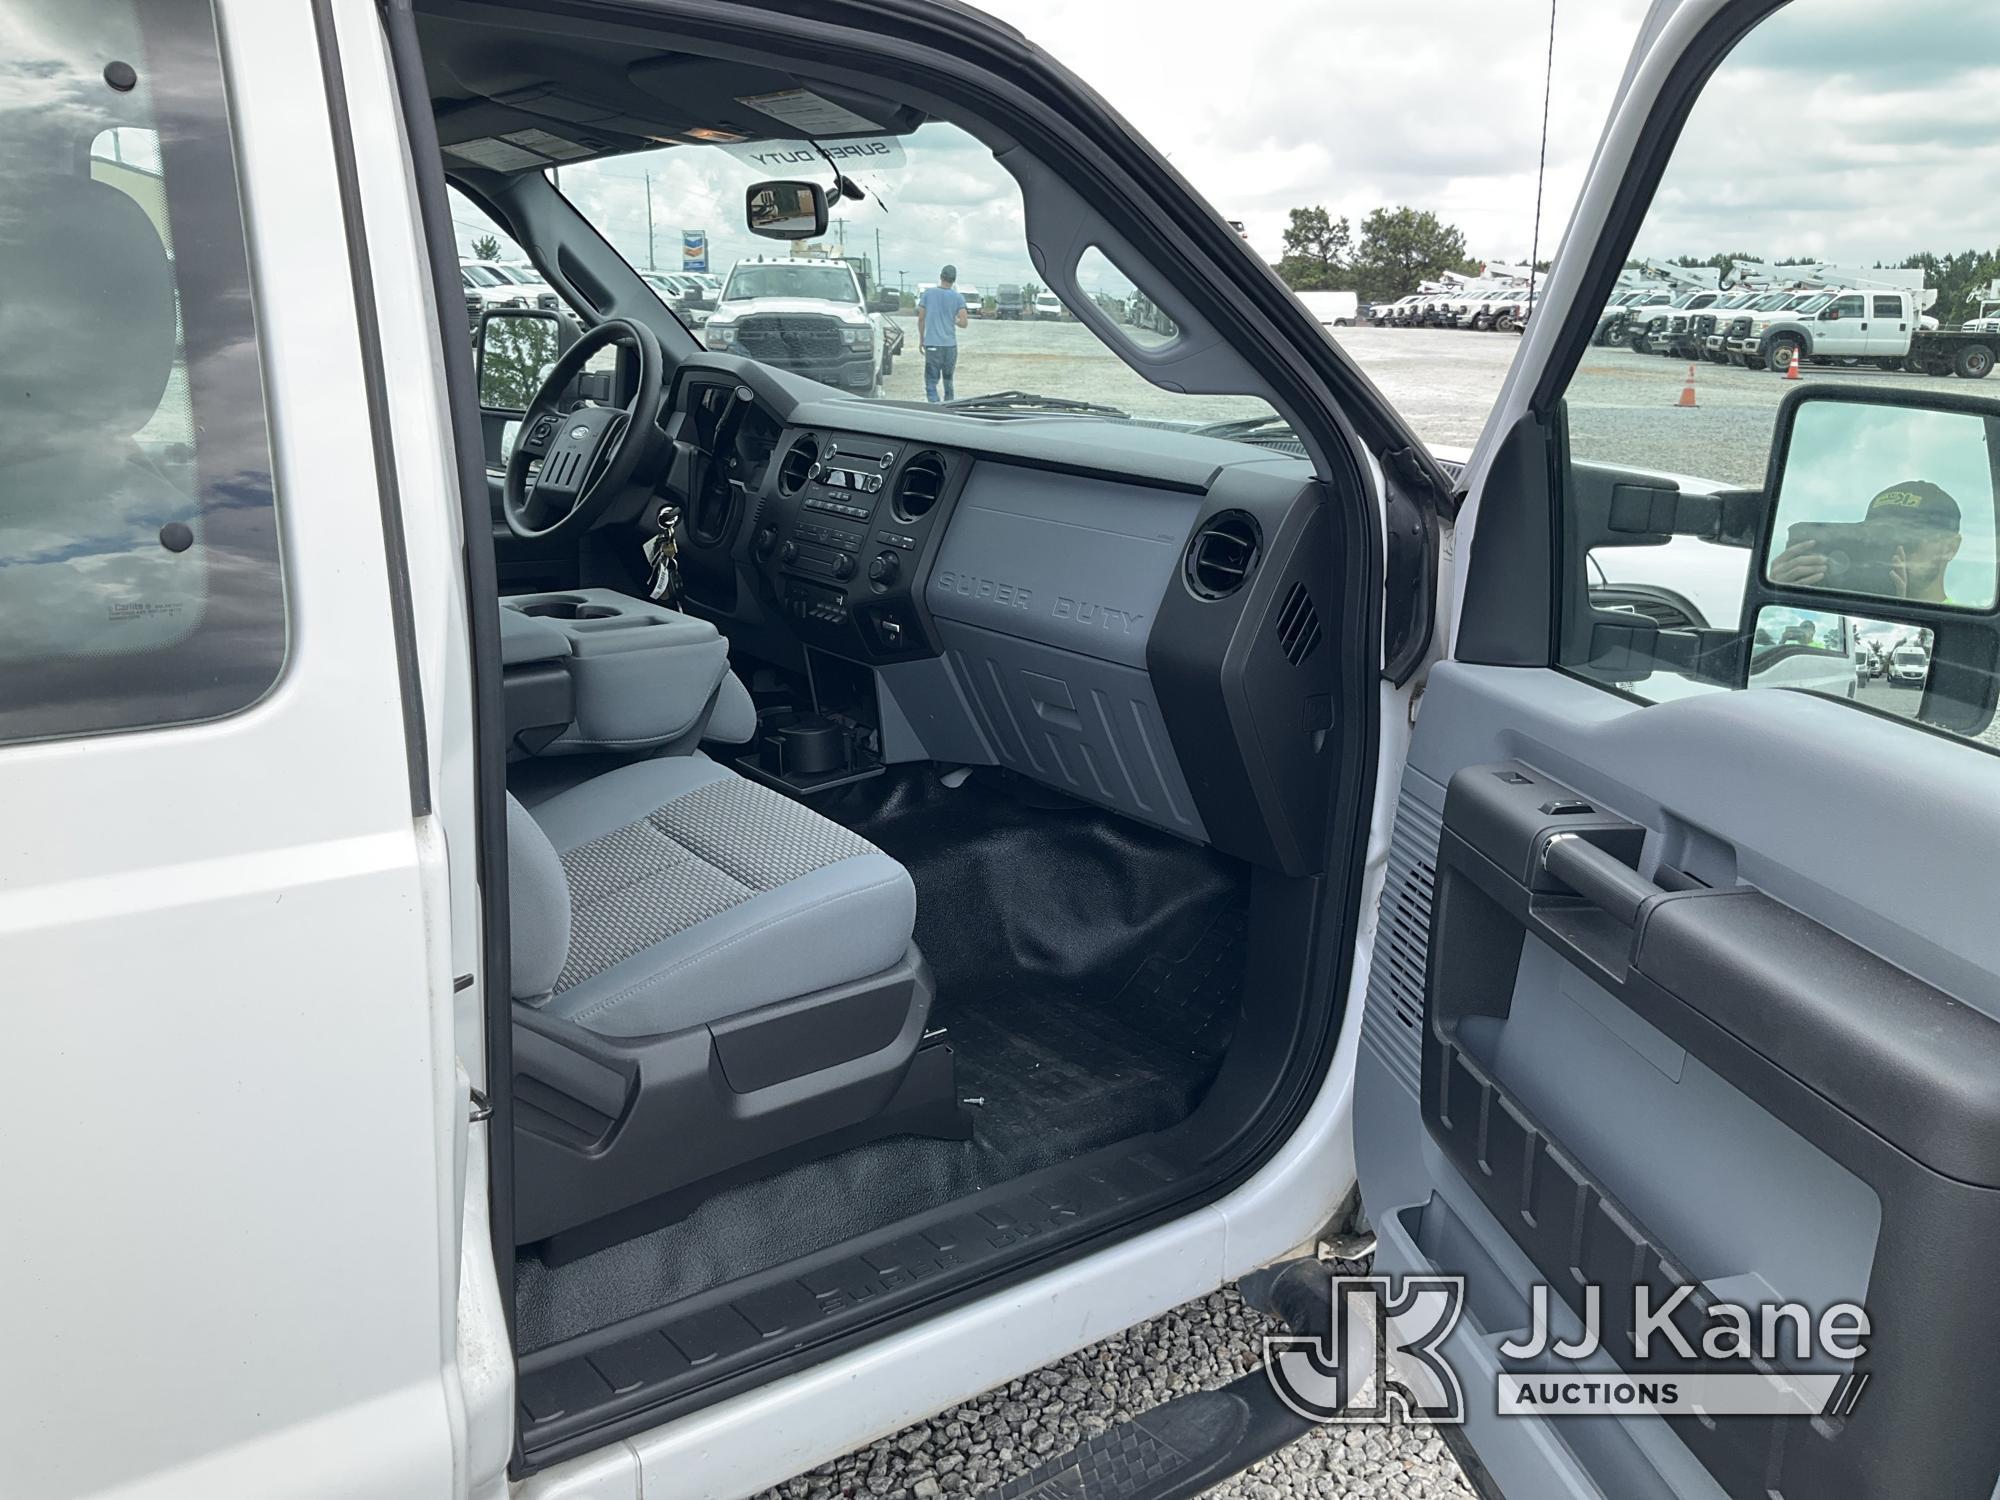 (Villa Rica, GA) 2016 Ford F250 Extended-Cab Pickup Truck, (GA Power Unit) Runs & Moves